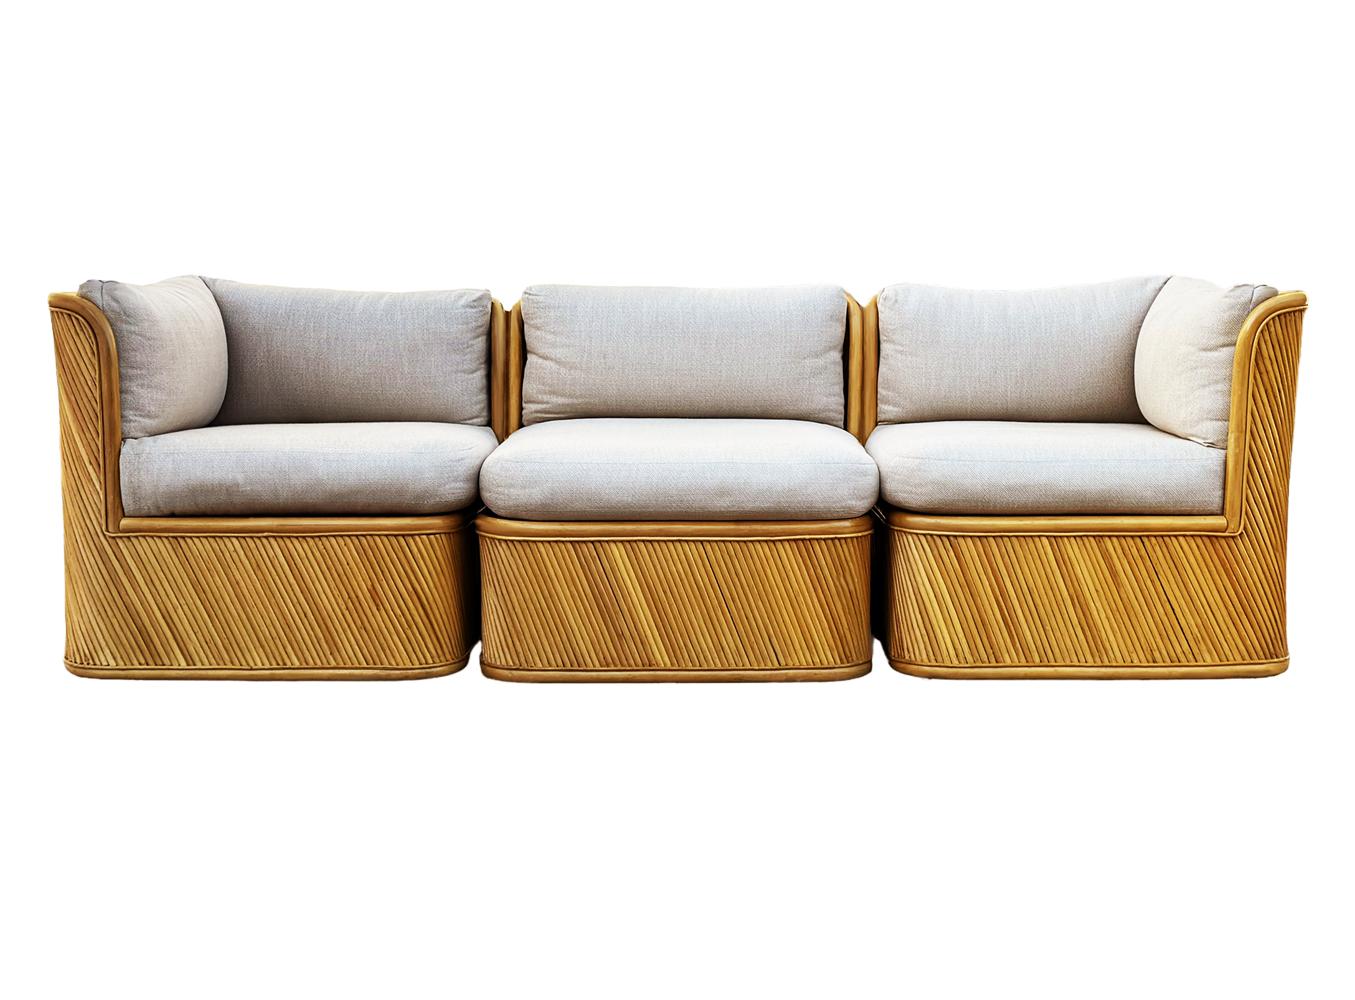 Ein hübsches und skulpturales Sofa von Comfort Design Furniture aus den 1970er Jahren. Das Sofa verfügt über eine schöne schwere Konstruktion mit einem skulpturalen Design & Bambus Schilf verkleidet. Die Kissen wurden kürzlich erneuert und sind in